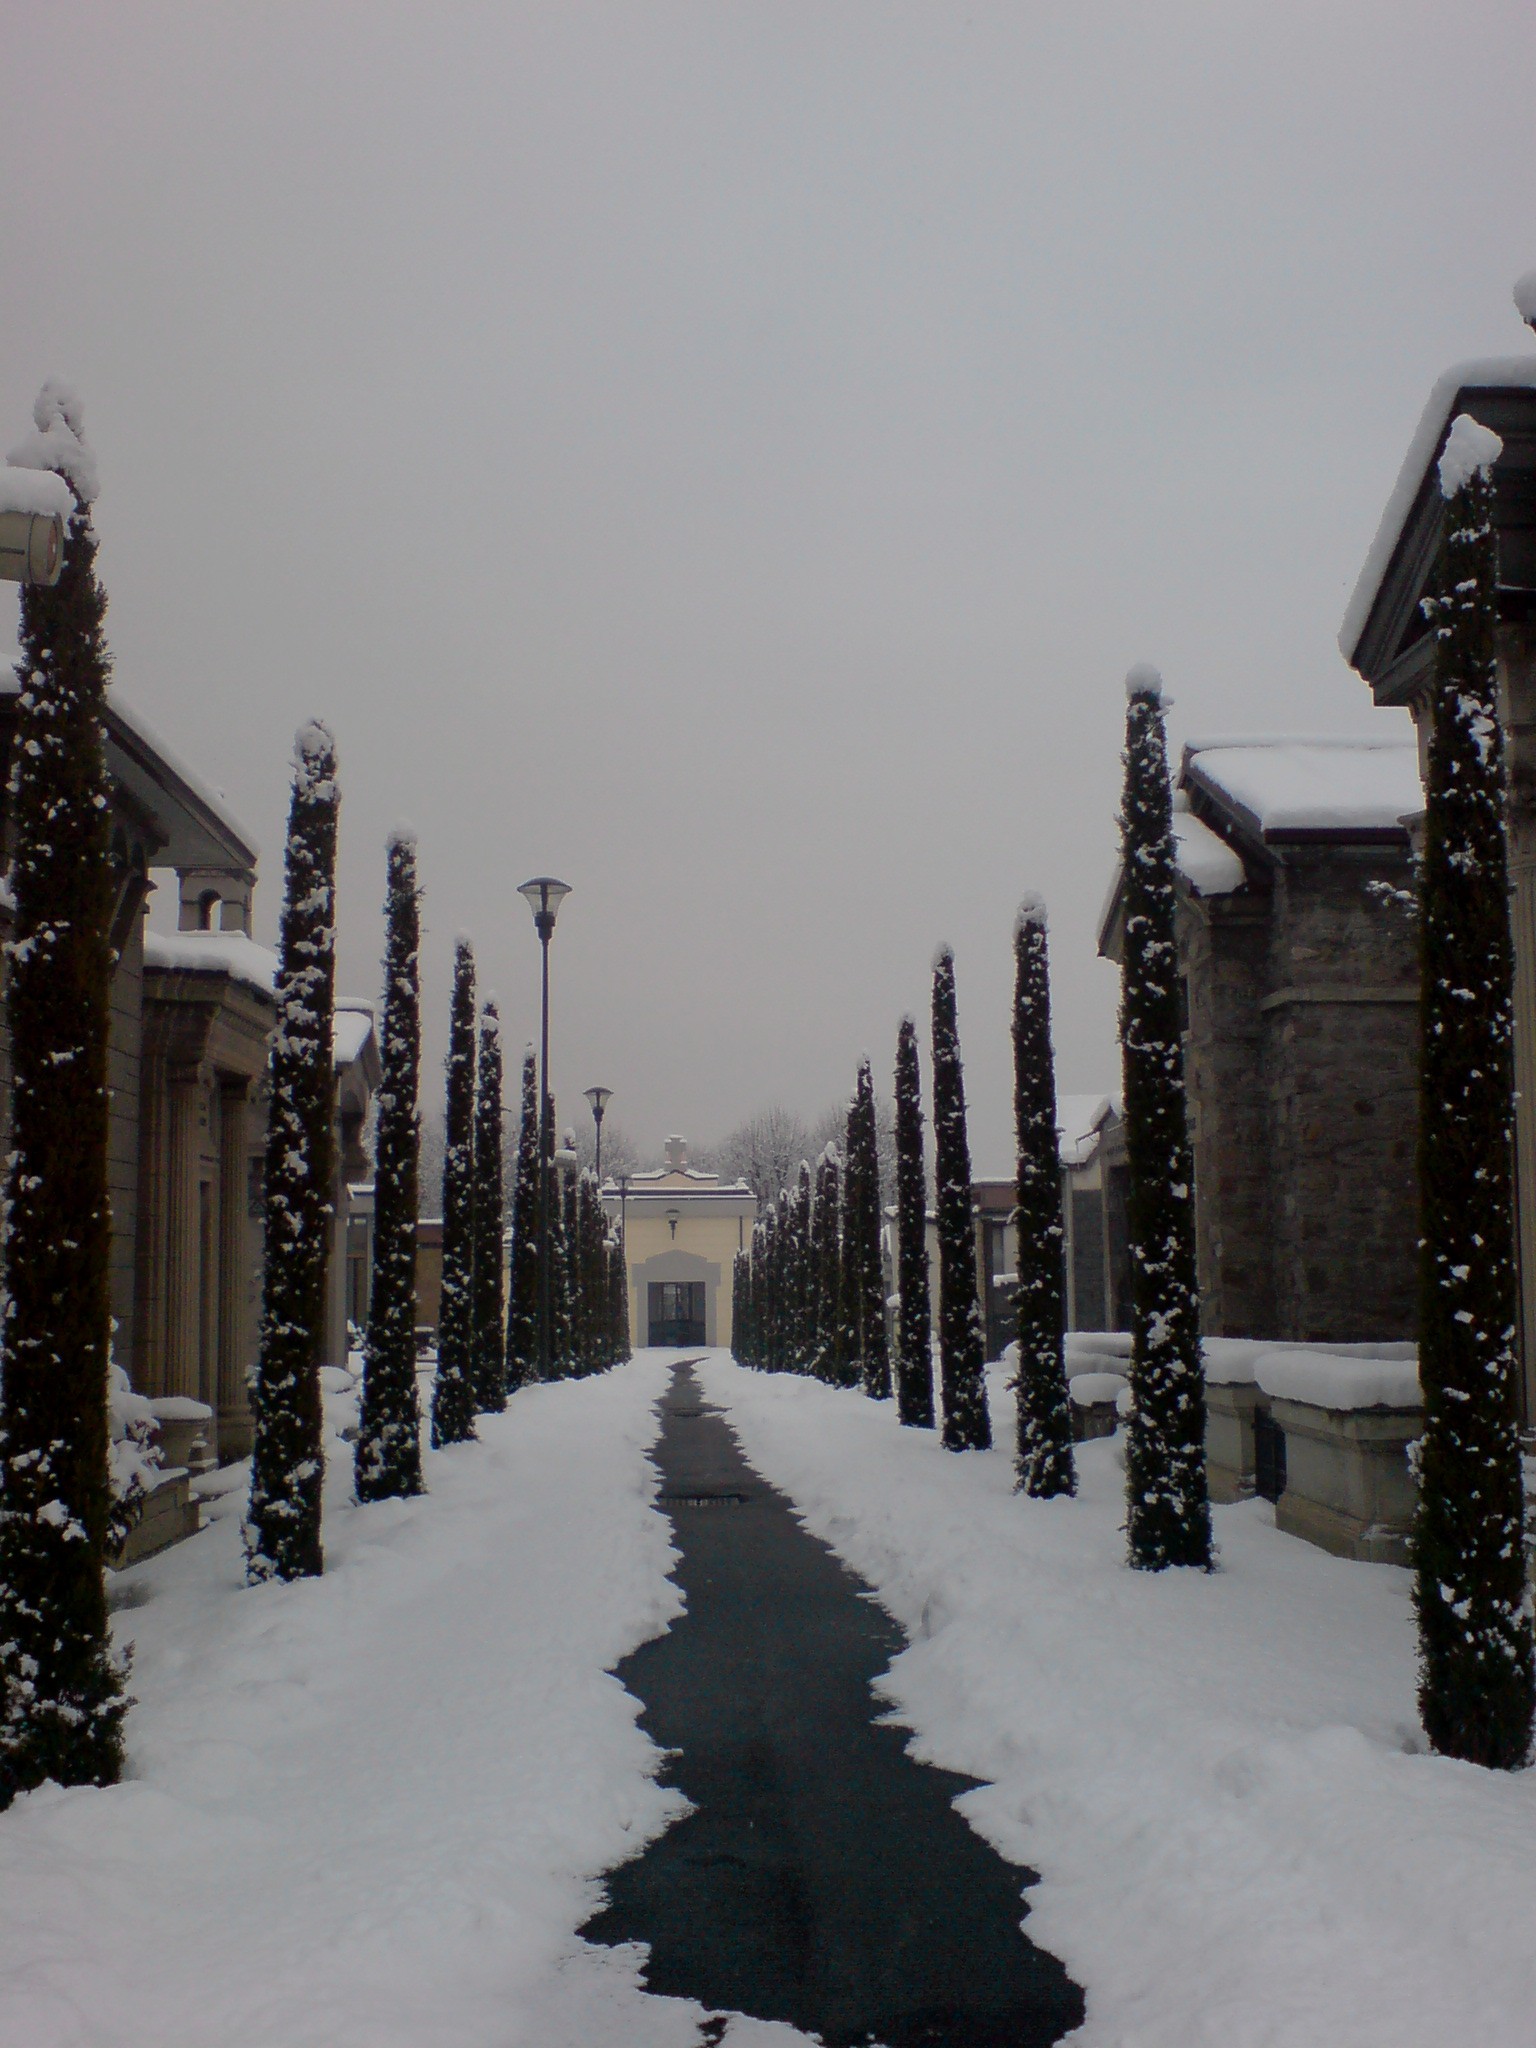 Viale di cipressi al cimitero di Aosta in inverno